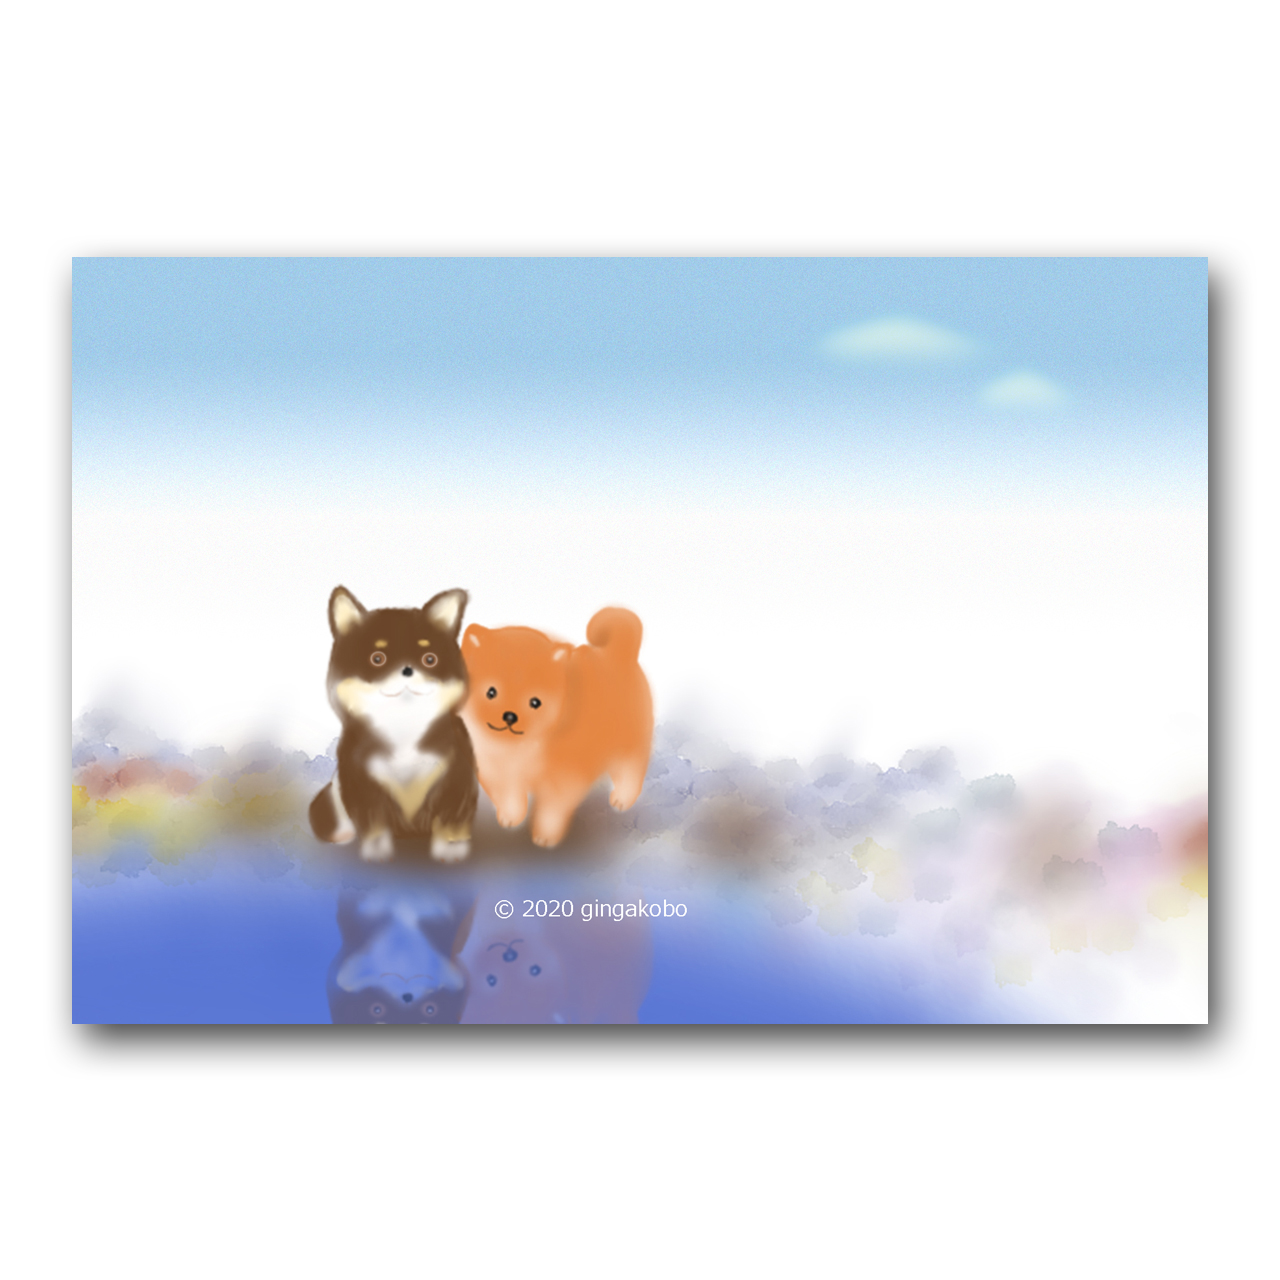 公園のような関係です 柴犬 ほっこり癒しのイラストポストカード2枚組 No 1224 Iichi ハンドメイド クラフト作品 手仕事品の通販